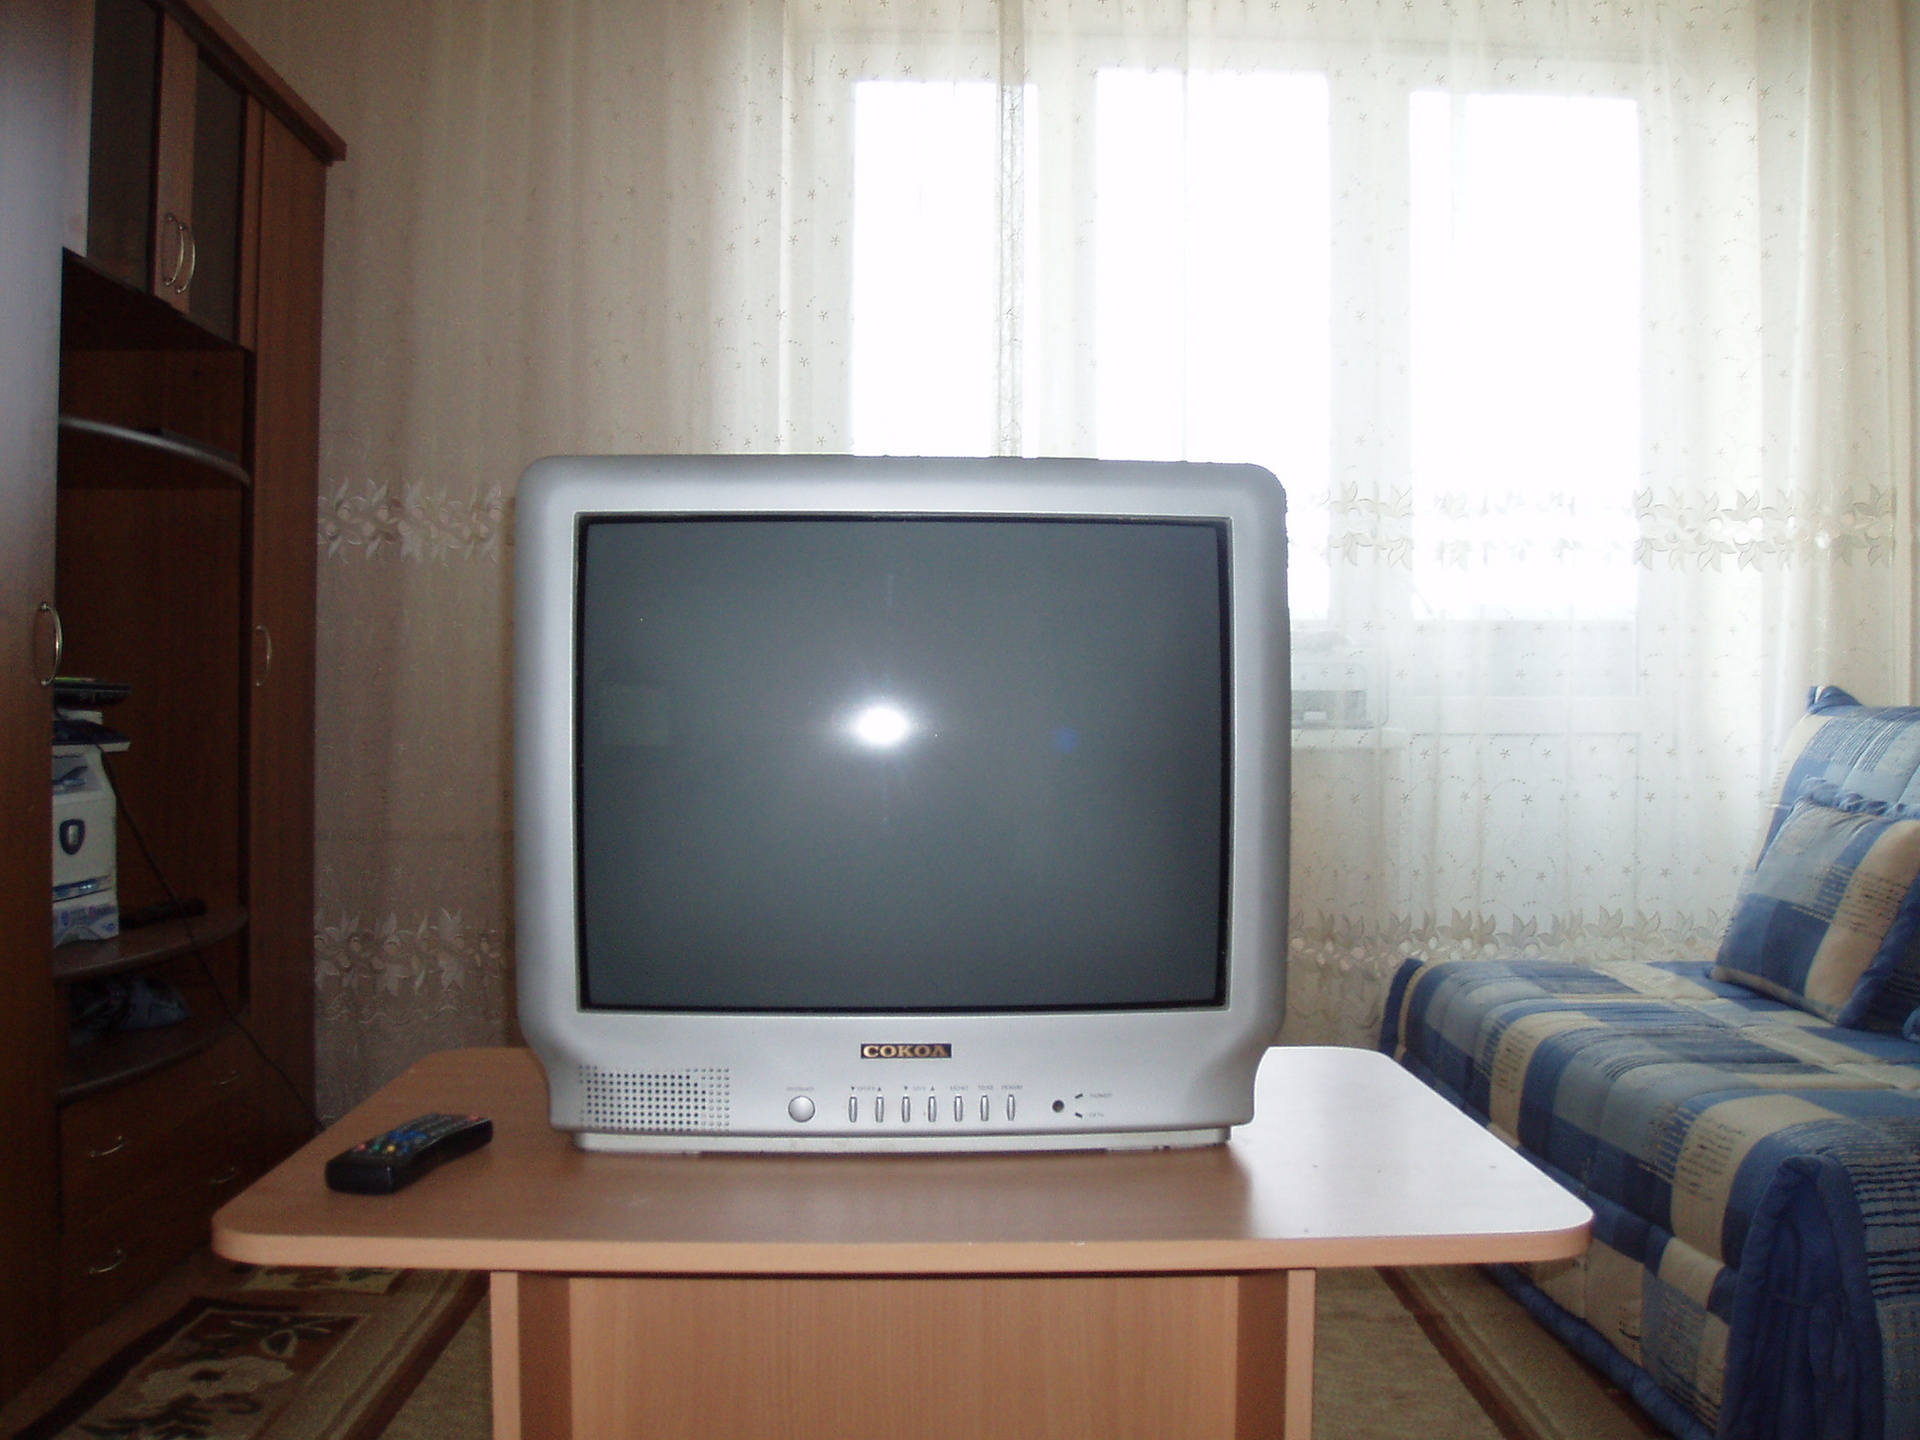 Телевизор бу нижний новгород. Бэушные телевизоры в Оренбурге. Недорогой телевизор картинки. Телевизор рассвет 307. Олх Актау телевизоры б у недорого.